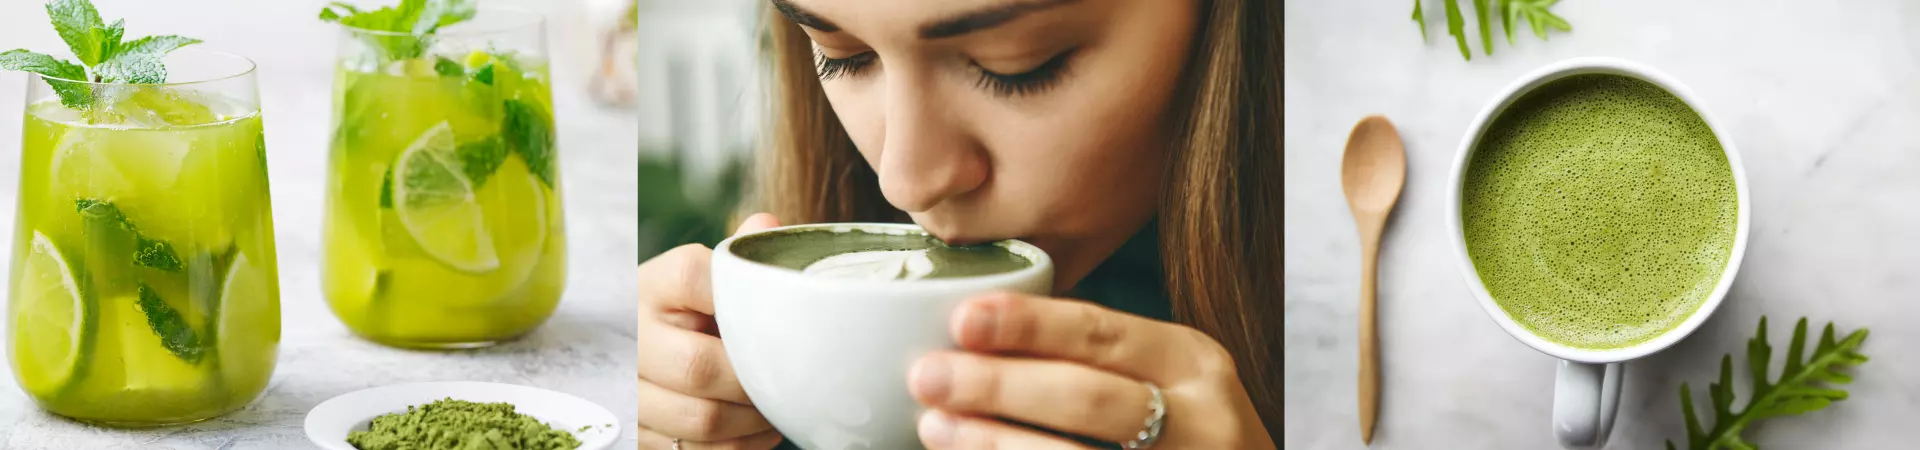 Mulher tomando uma xícara de chá verde matcha.